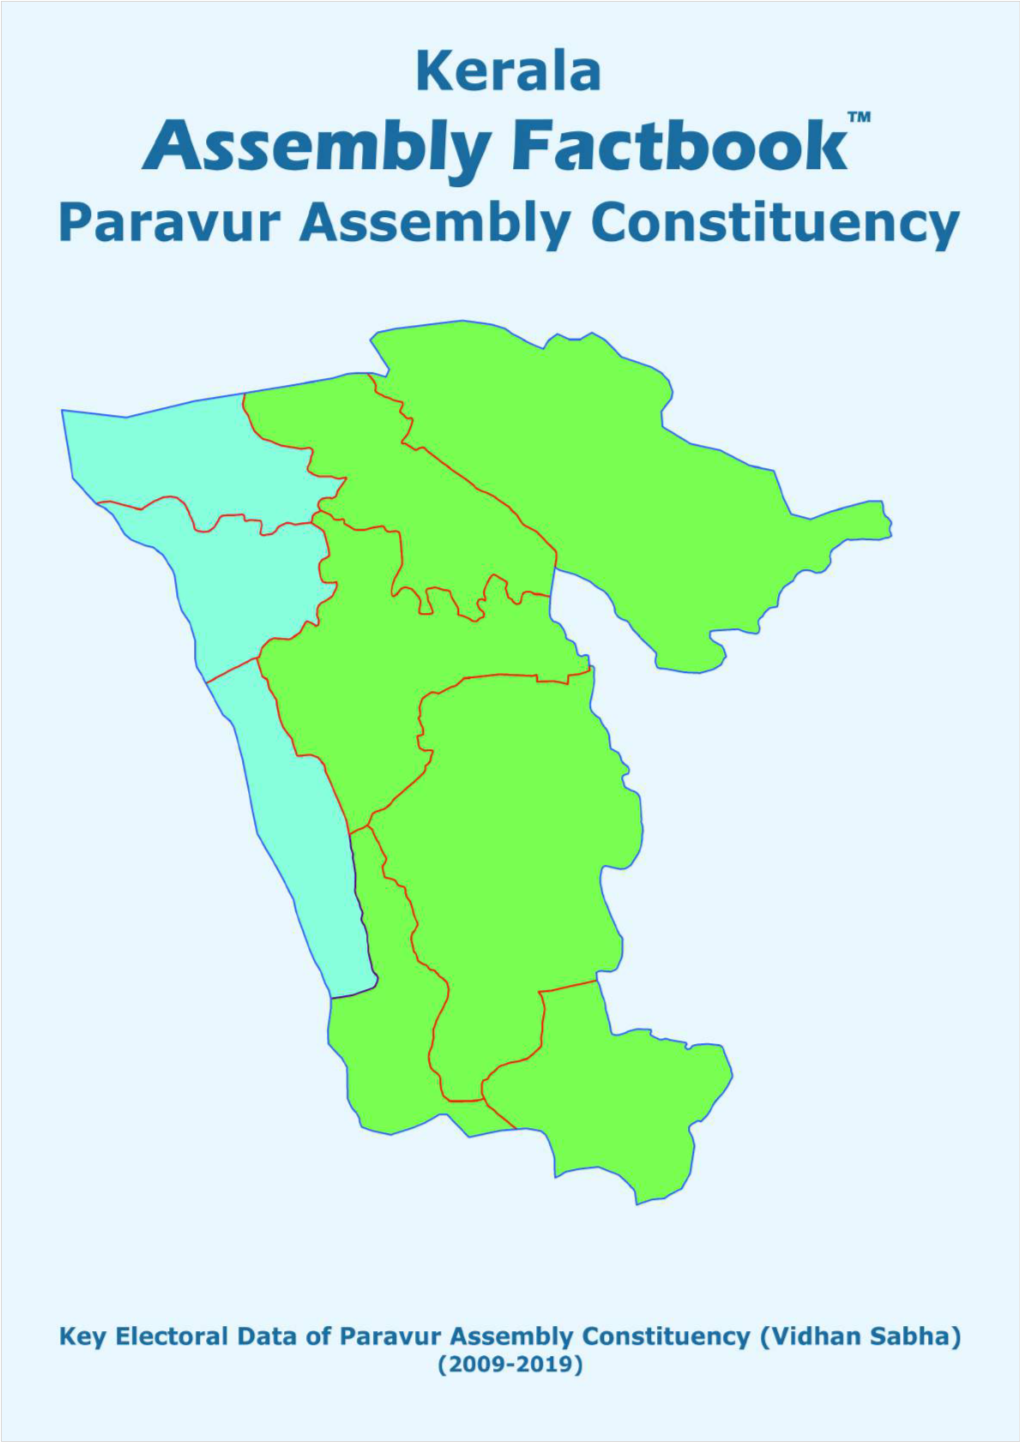 Paravur Assembly Kerala Factbook